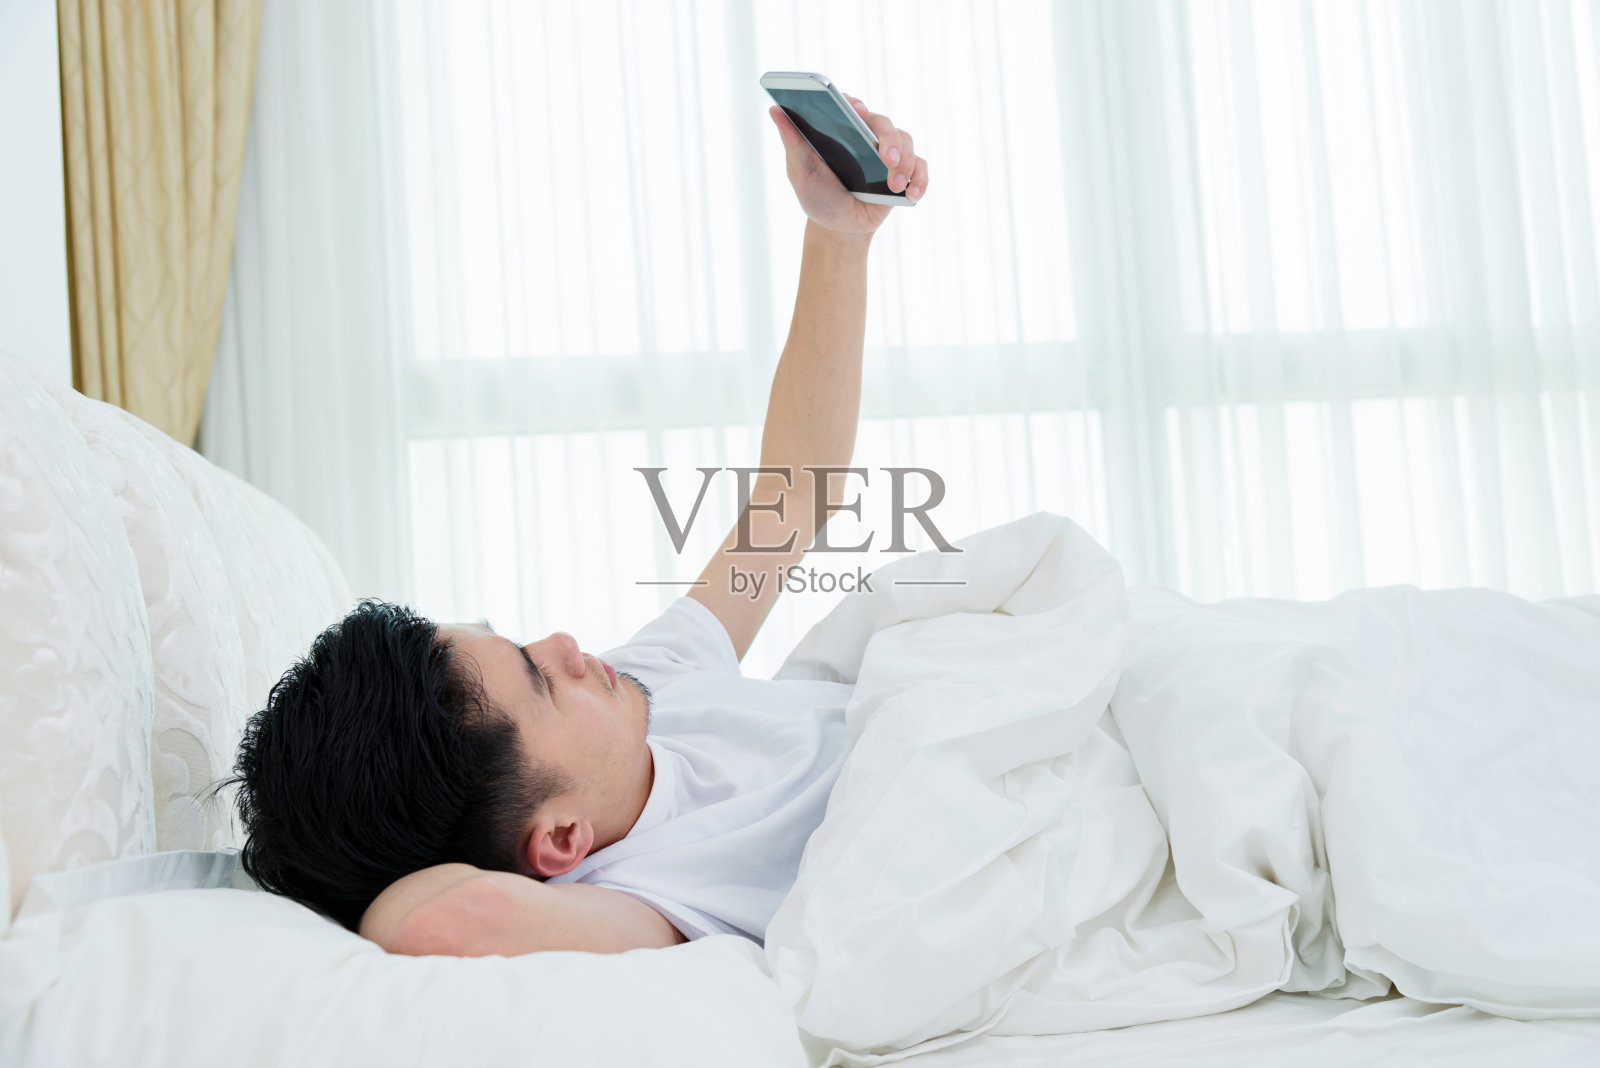 年轻人在床上使用智能手机照片摄影图片